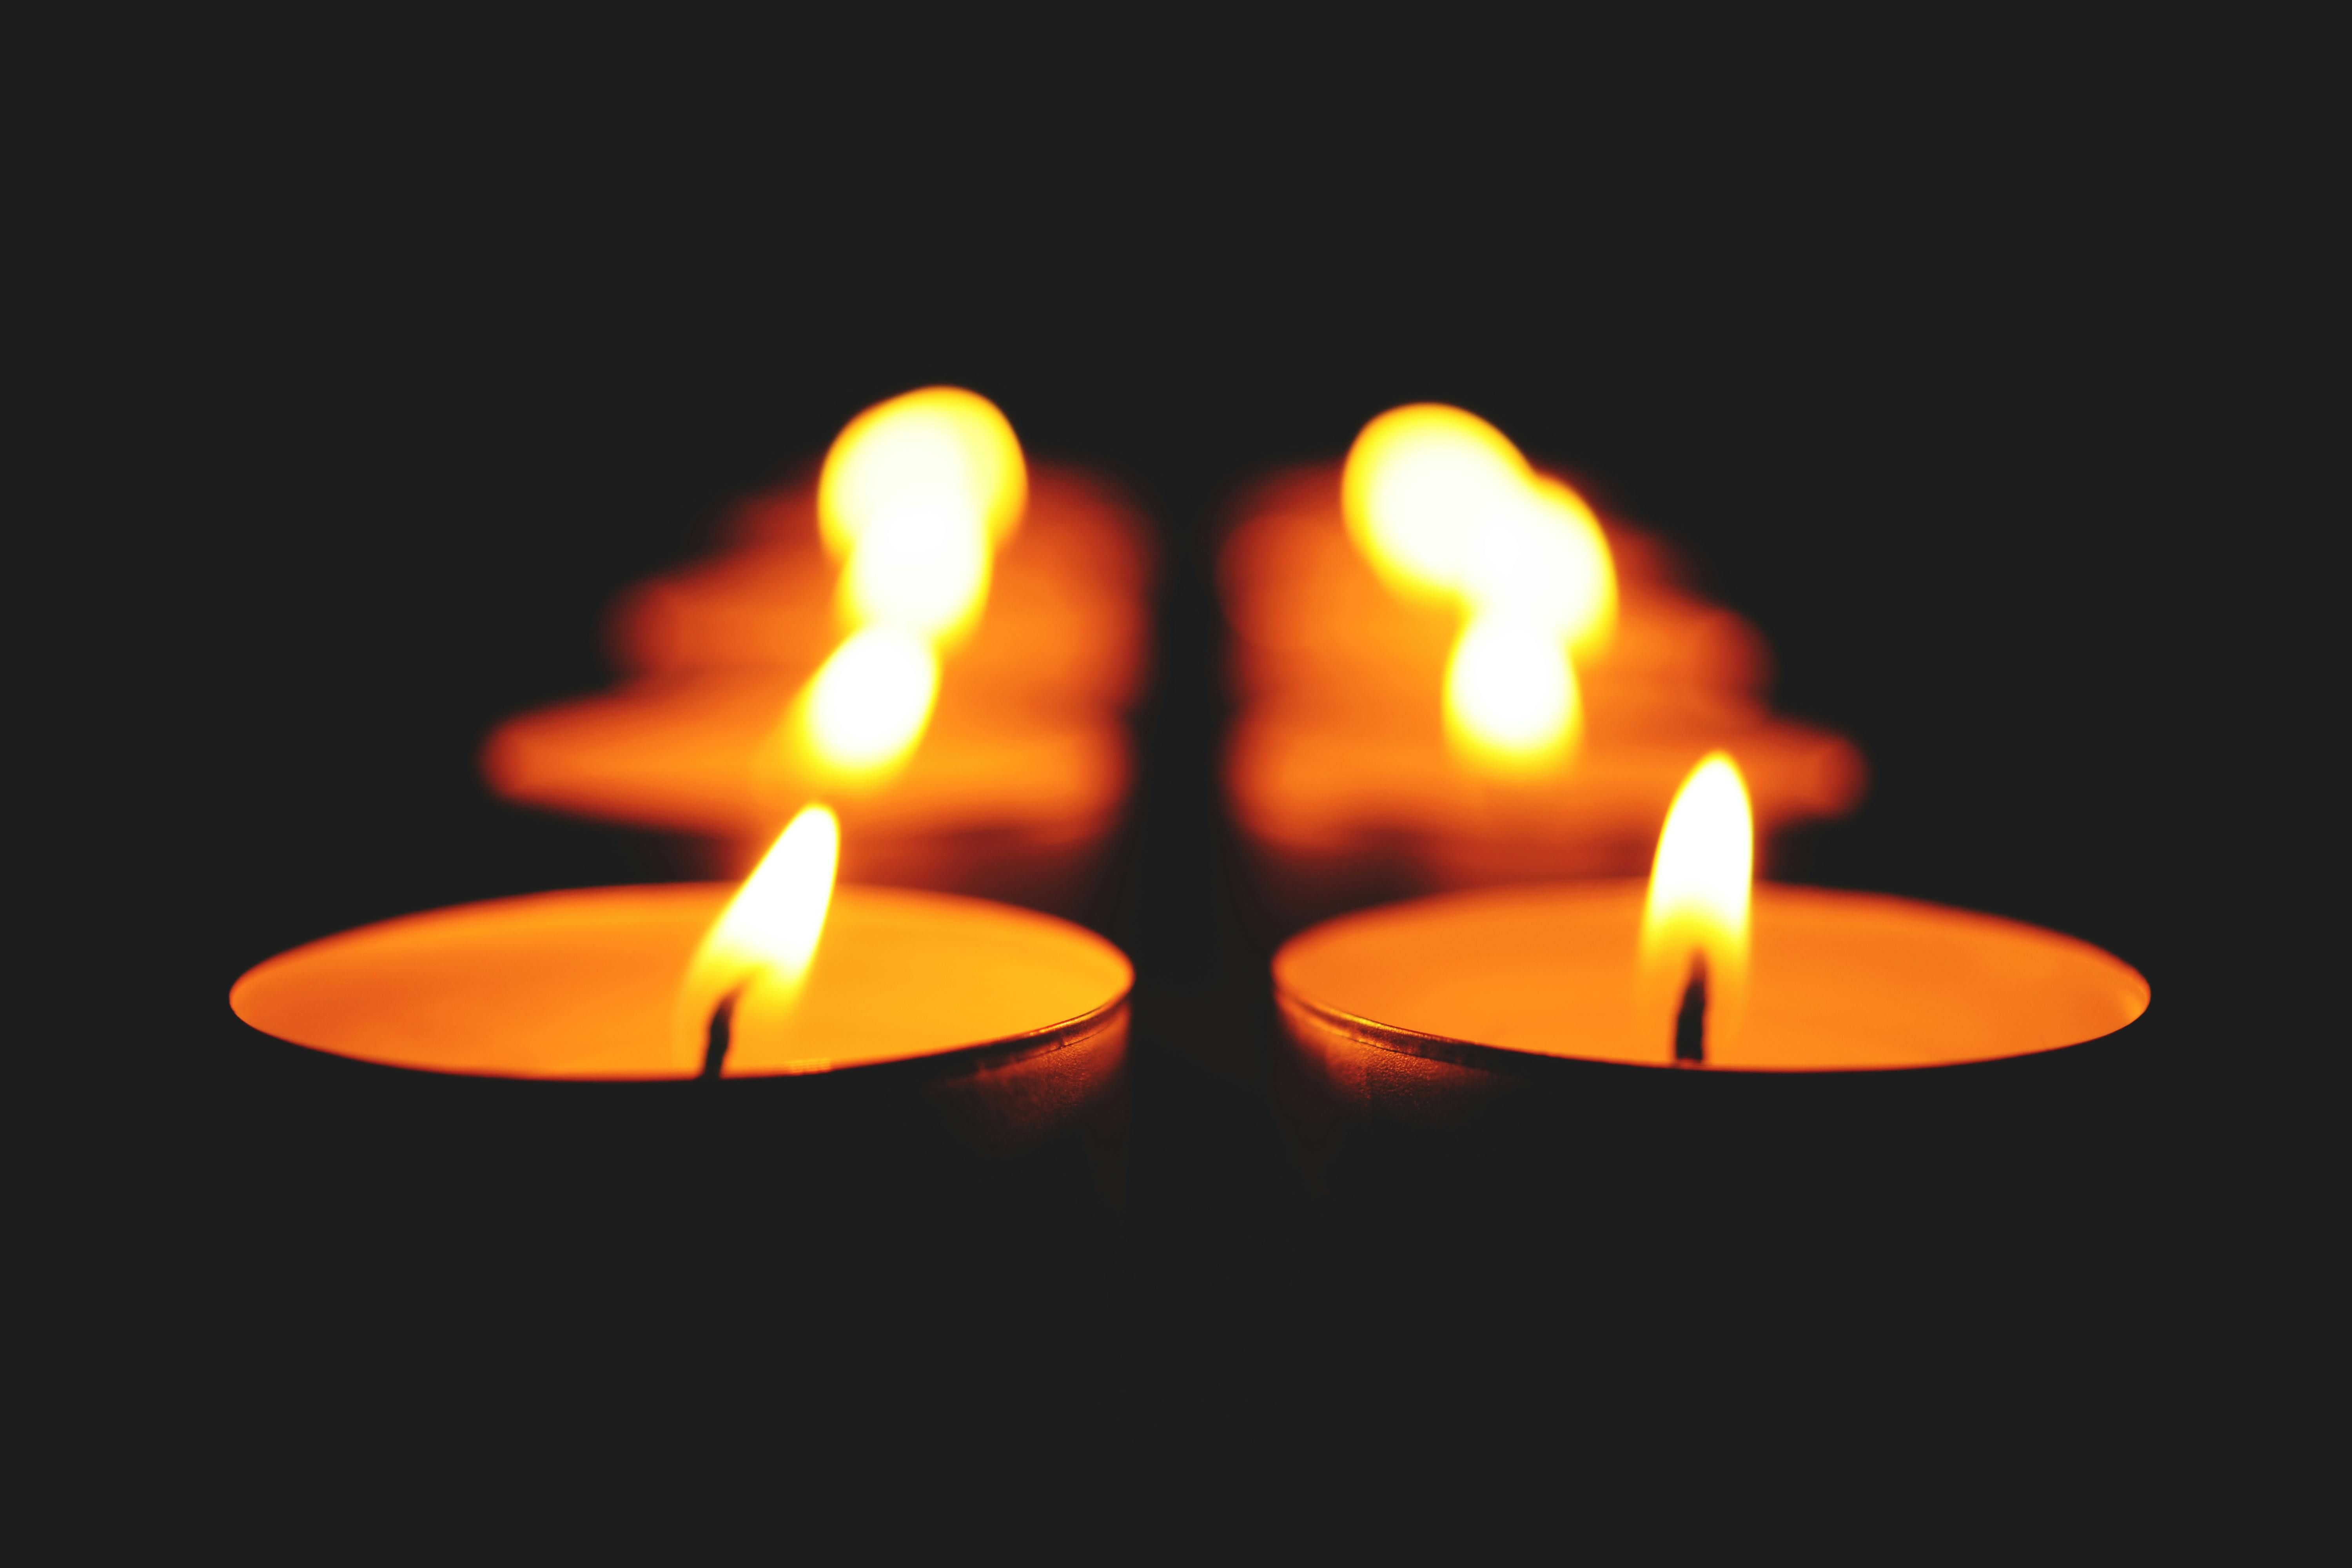 close up of illuminated candle against black background